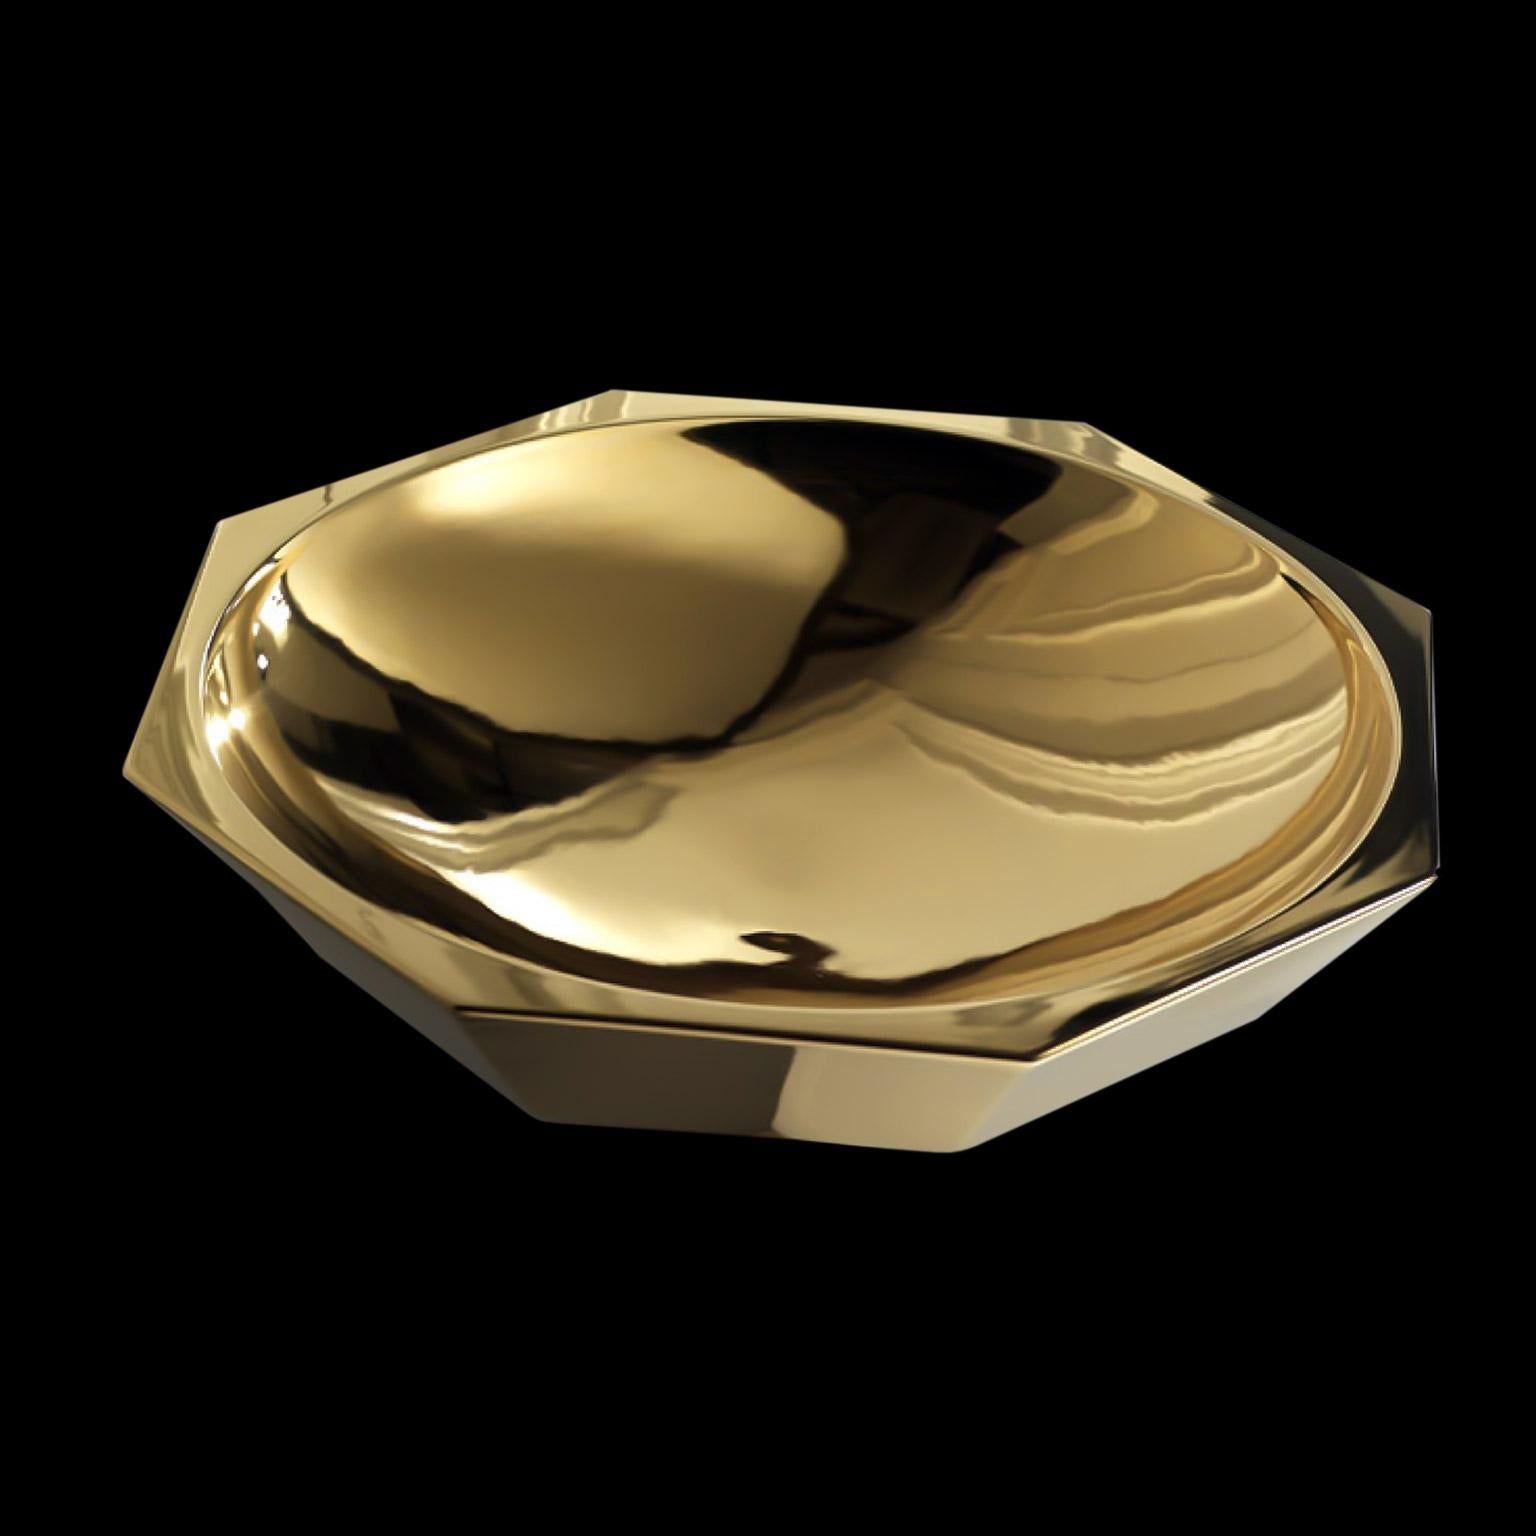 Ceramic bowl CLIO, handcrafted in 24-karat gold 

code DD011
measures: H. 15.0 cm. - Dm. 60.0 cm.